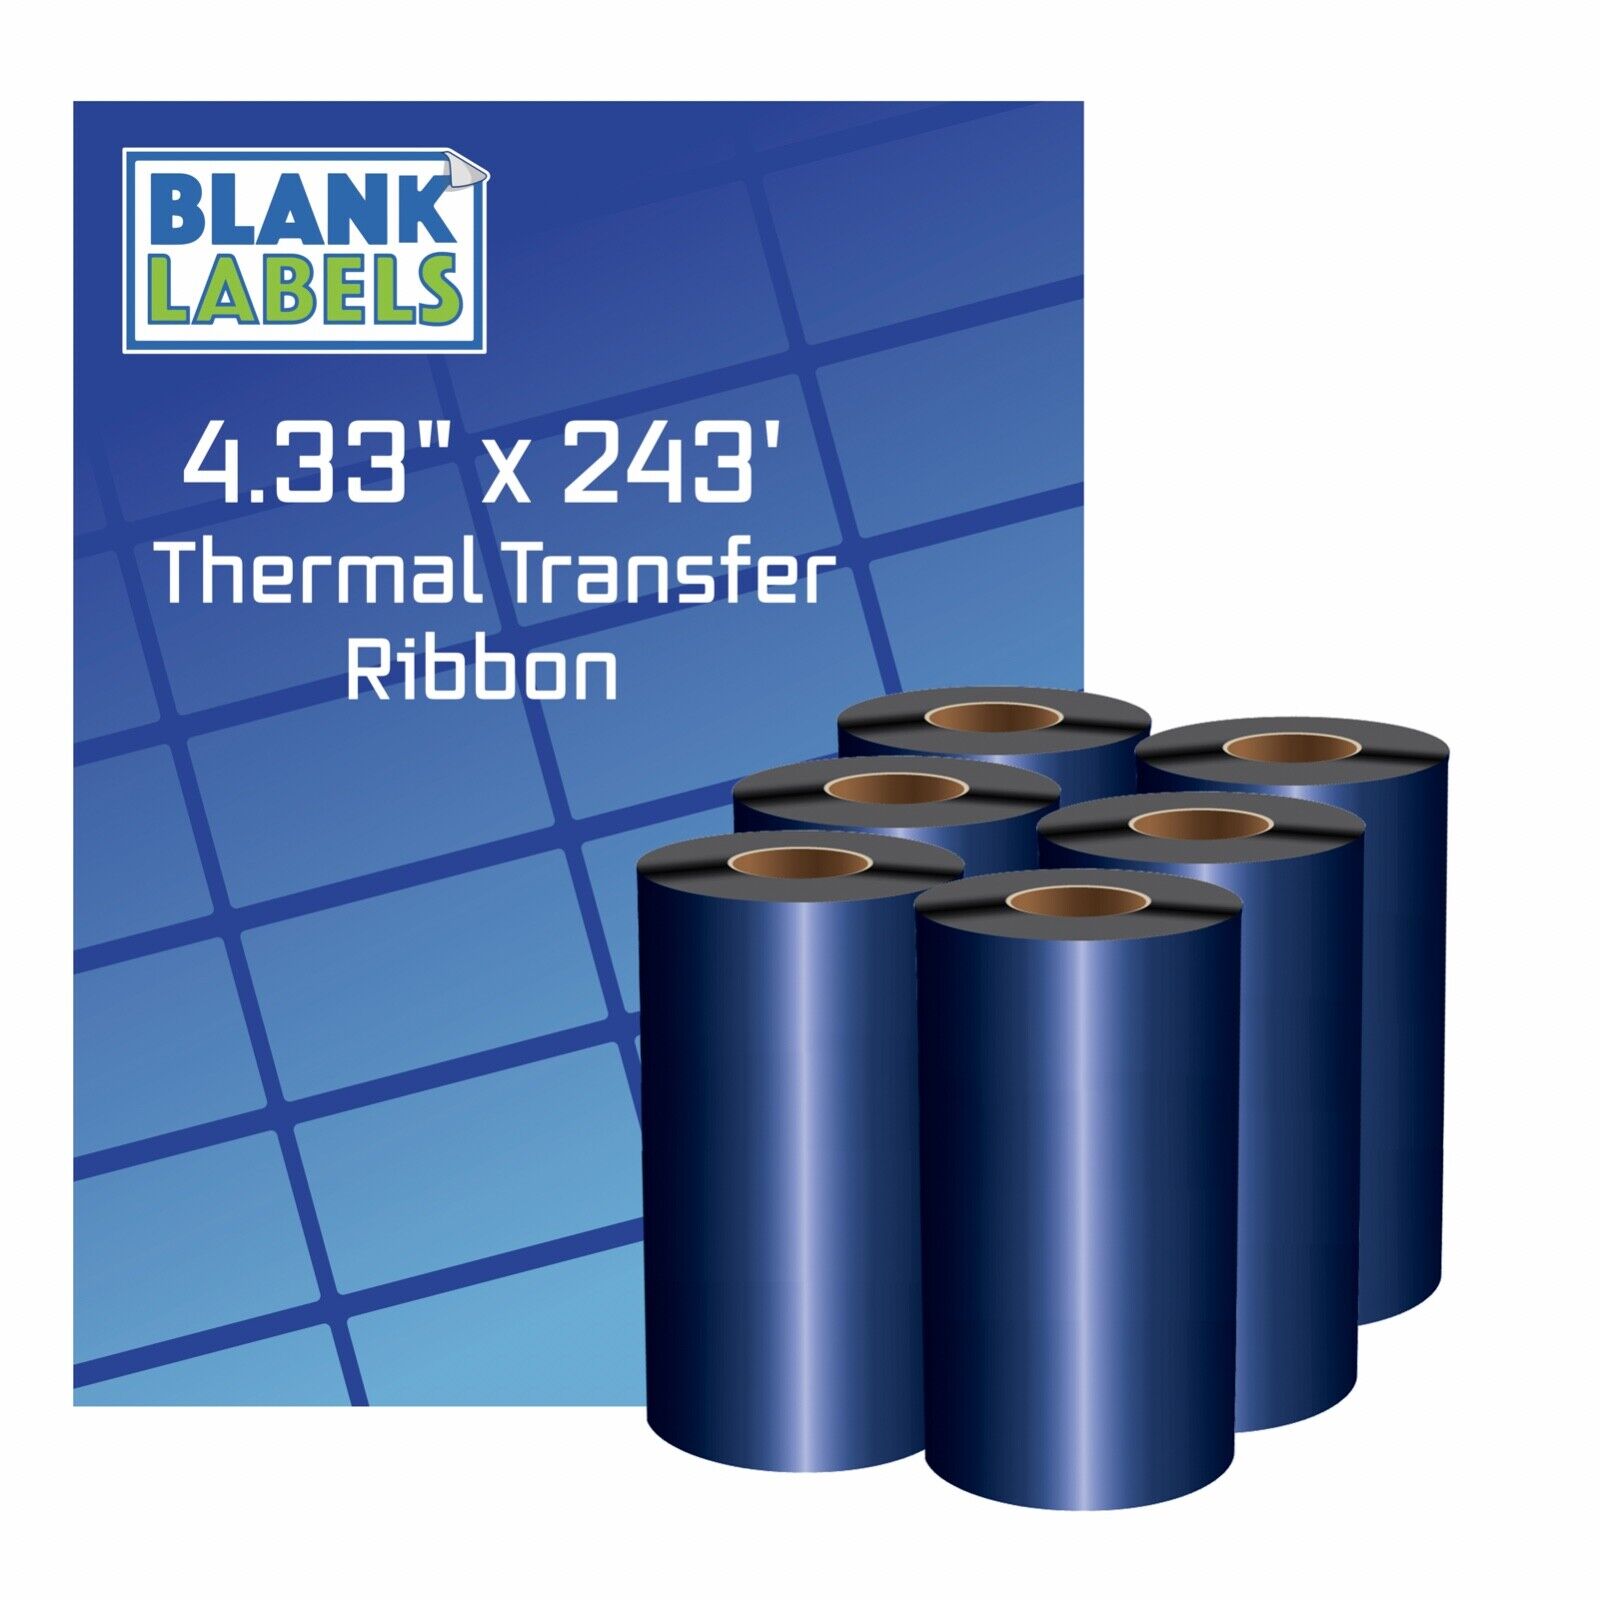 6 Rolls Wax 4.33 x 243 Thermal Transfer Ribbon 110x74 Zebra 2844 TLP Eltron